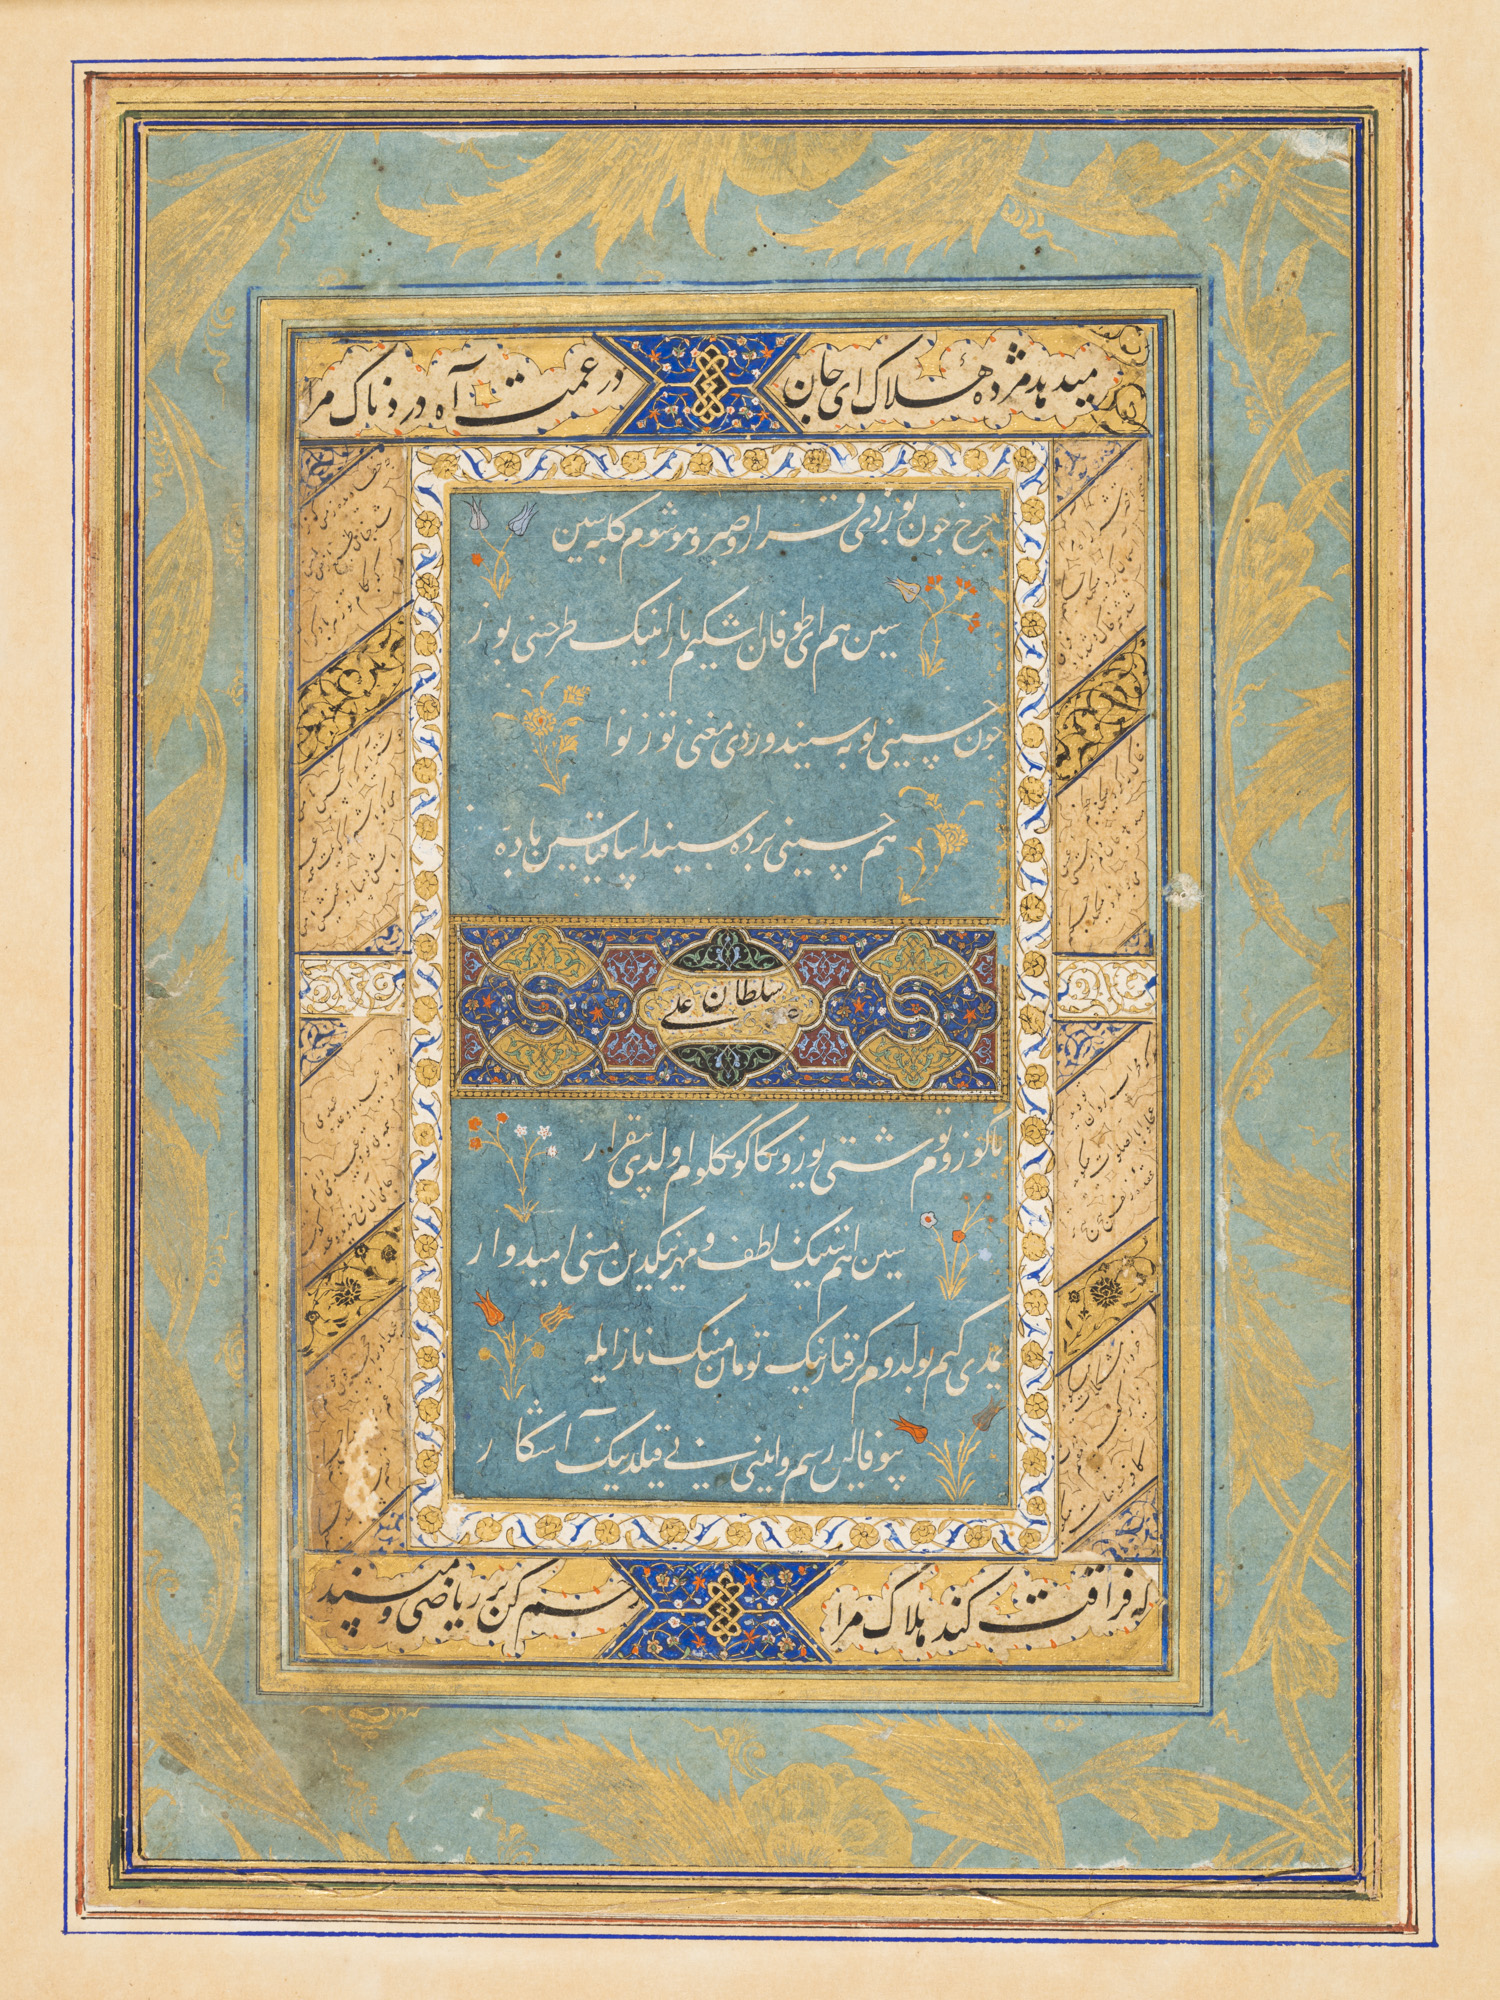 Aşkın Öngörülemez Hallerinin Sebep Olduğu Yas ve Istırabı Anlatan Yaprak: Sultan Hüseyin Mirza Baykara’nın şiirlerinden oluşan dağıtılmış bir divandan (derleme) by Sultan Ali Mashhadi - ca. 1490 (Timurid period) - 15 5/16 in x 11 1/16 in 